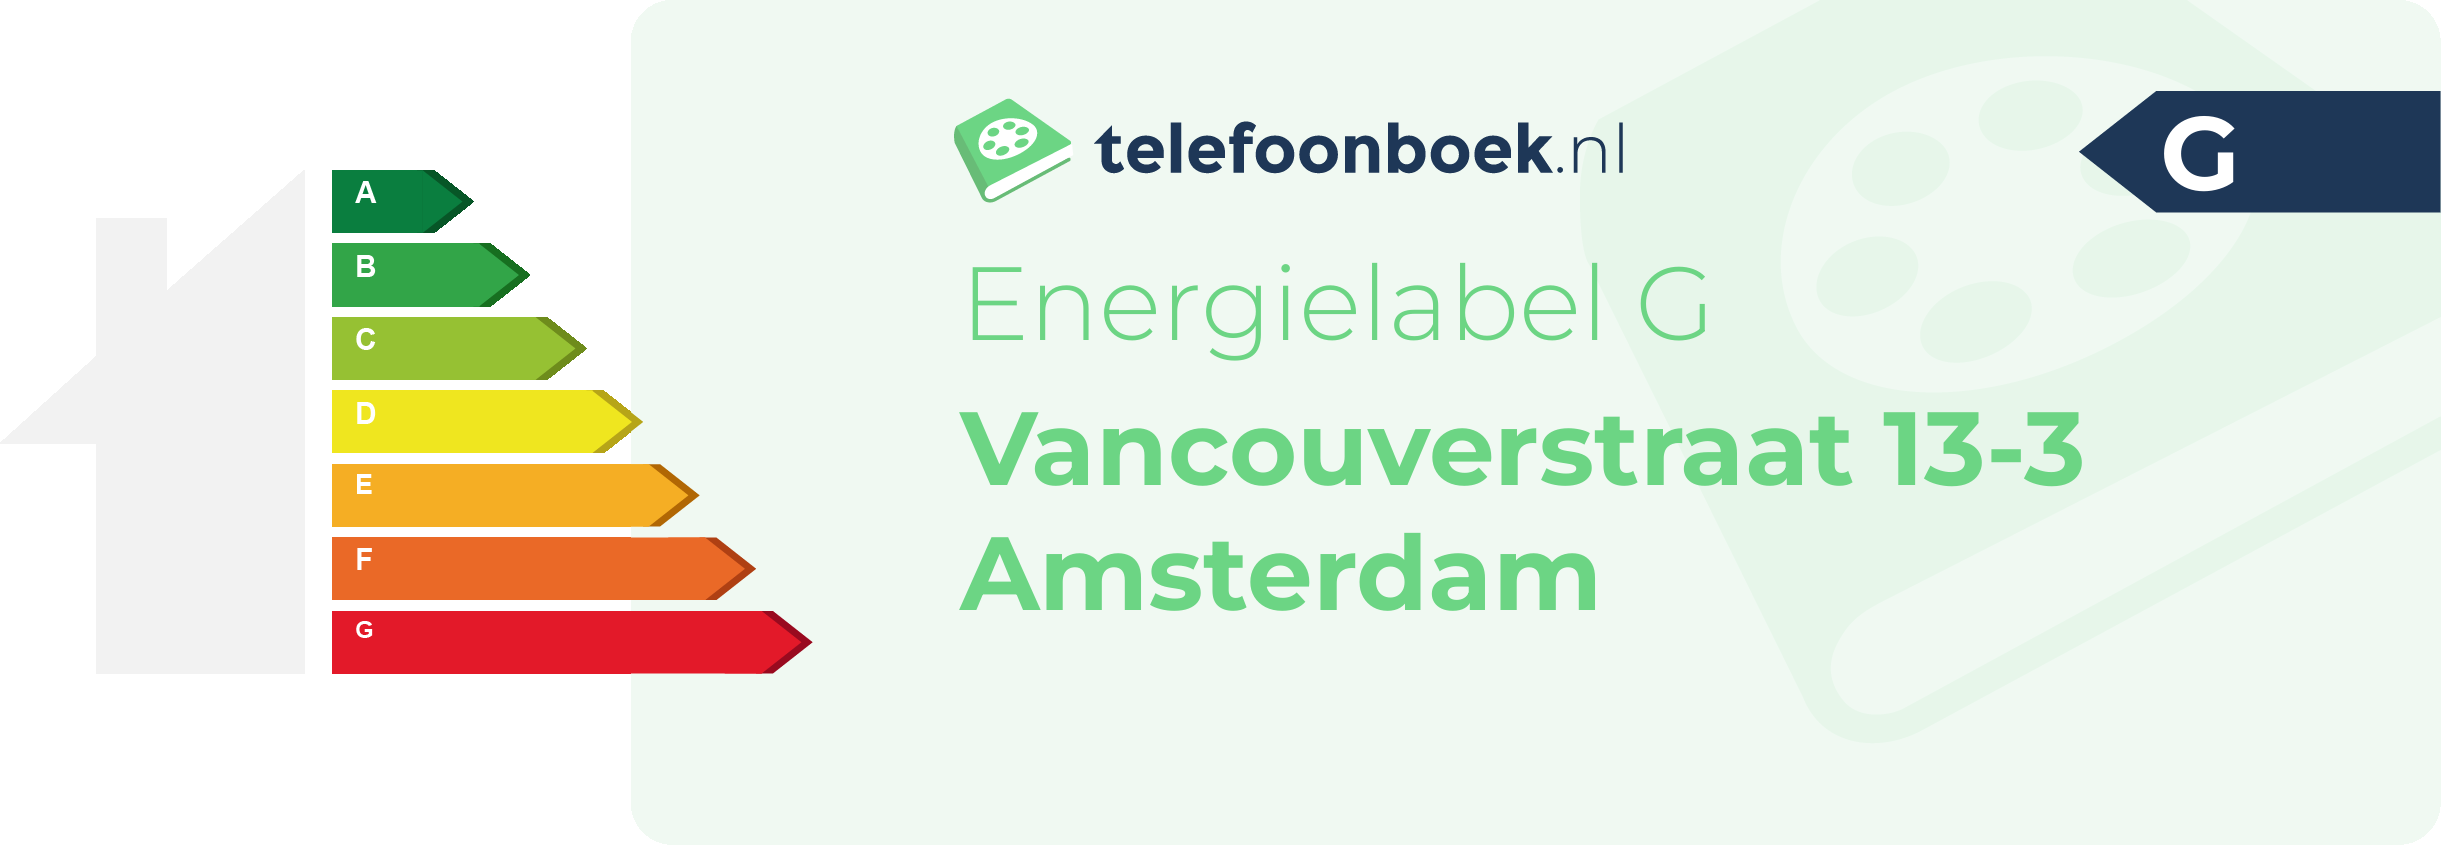 Energielabel Vancouverstraat 13-3 Amsterdam